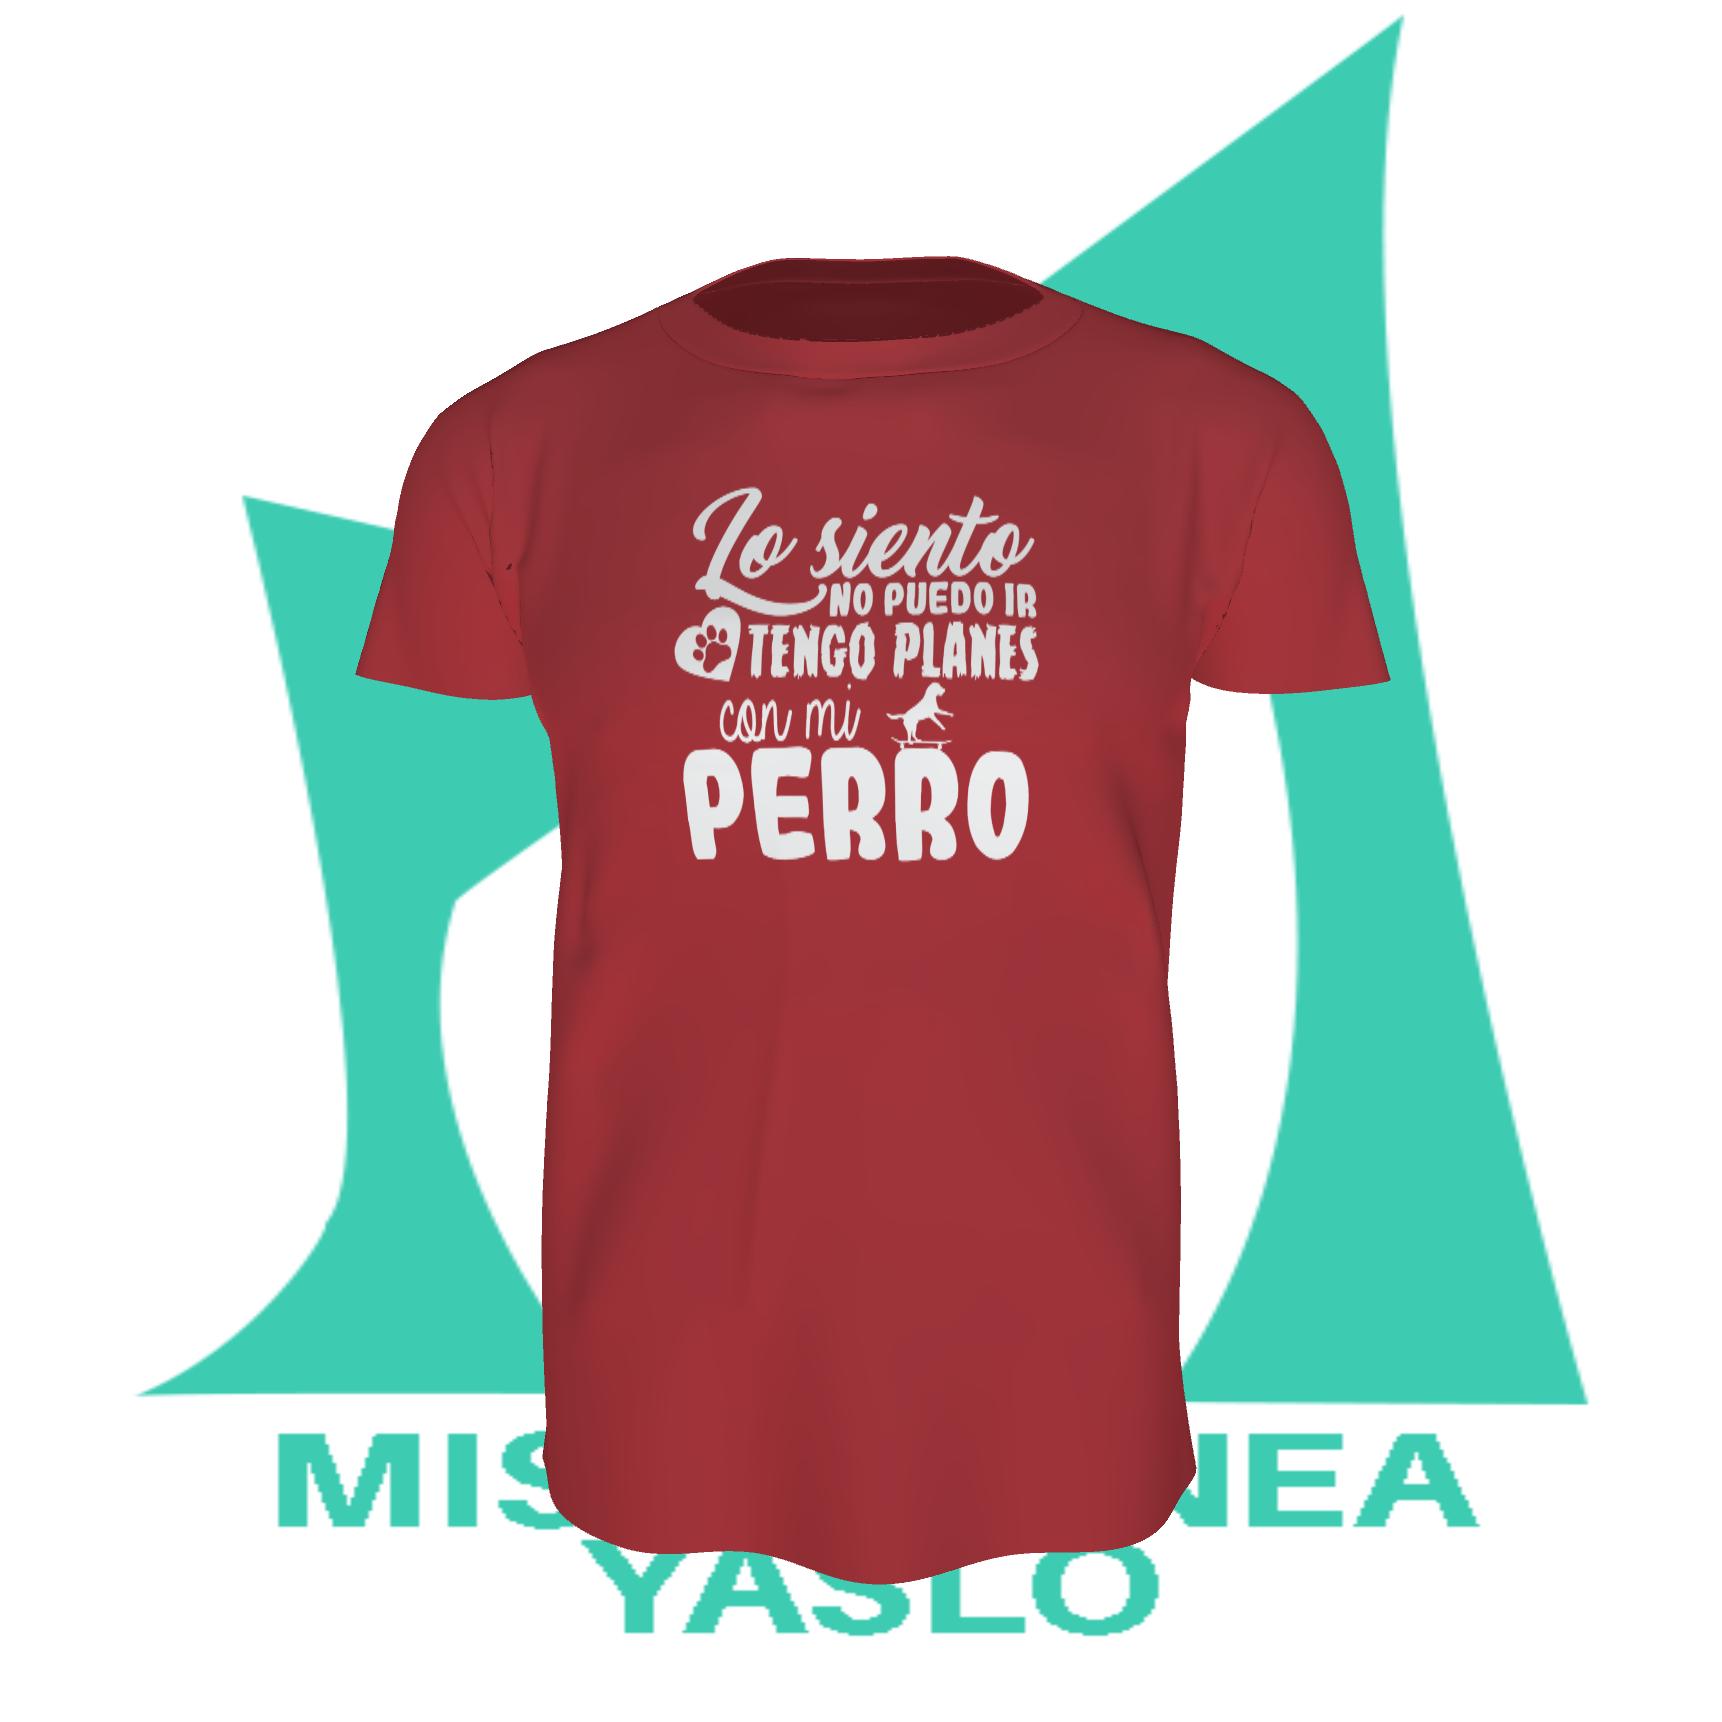 Camisetas Perros Valencia // Precio Camiseta Perros Baratas // Personalizada Perros Aldaia Valencia// Comprar Camisetas Perros